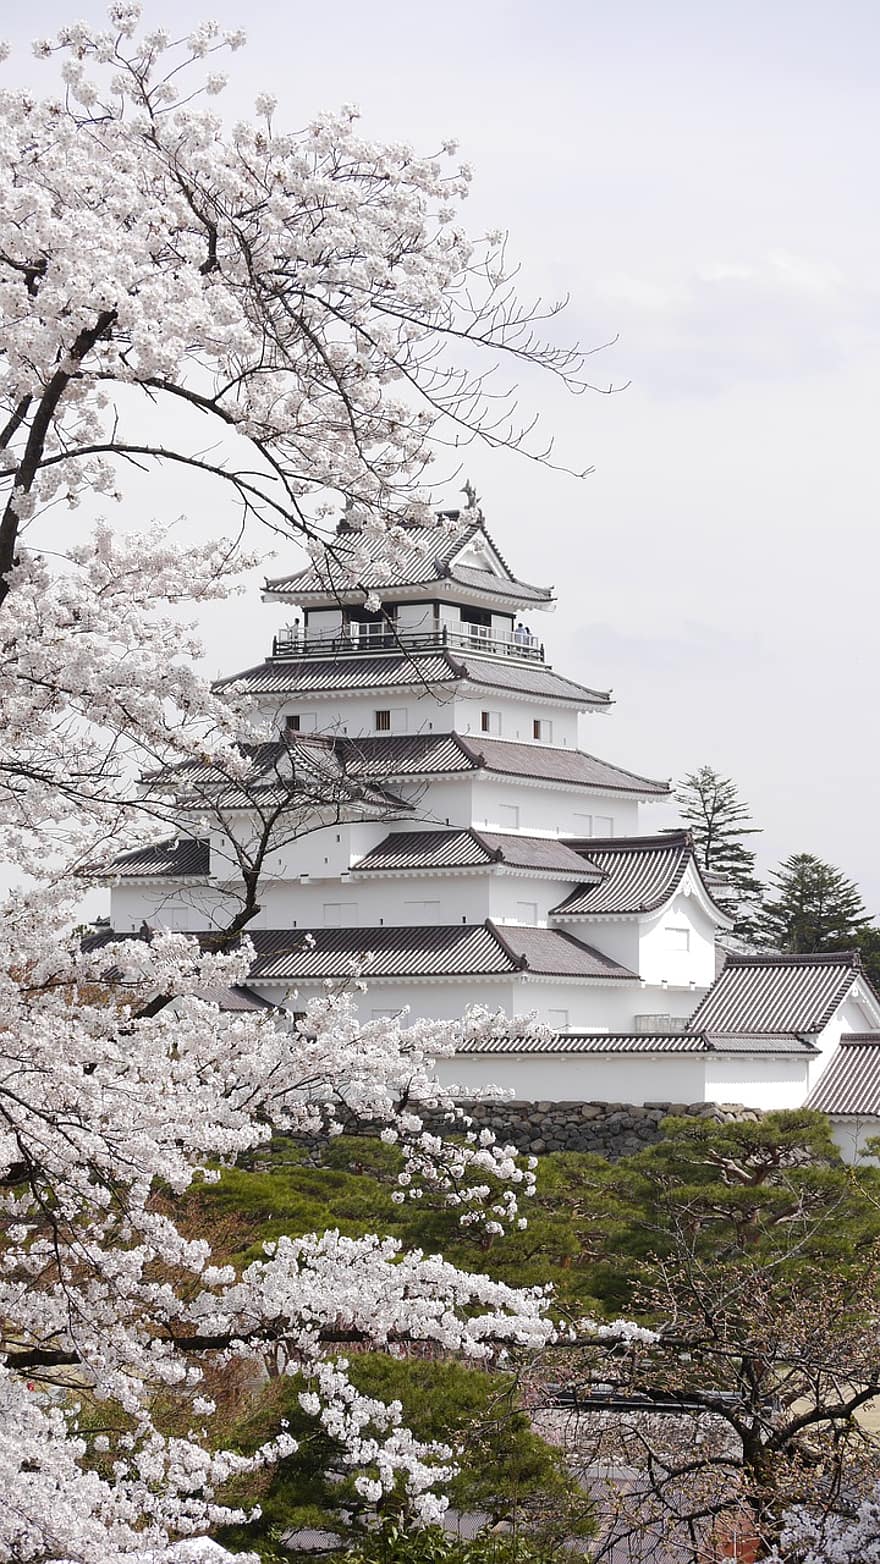 Japonya, Kiraz çiçekleri, bahar, tsuruga-jo kalesi, fukushima, Aizu, Aizuwakamatsu, turistik yer, işaret, turistik yerler, bina